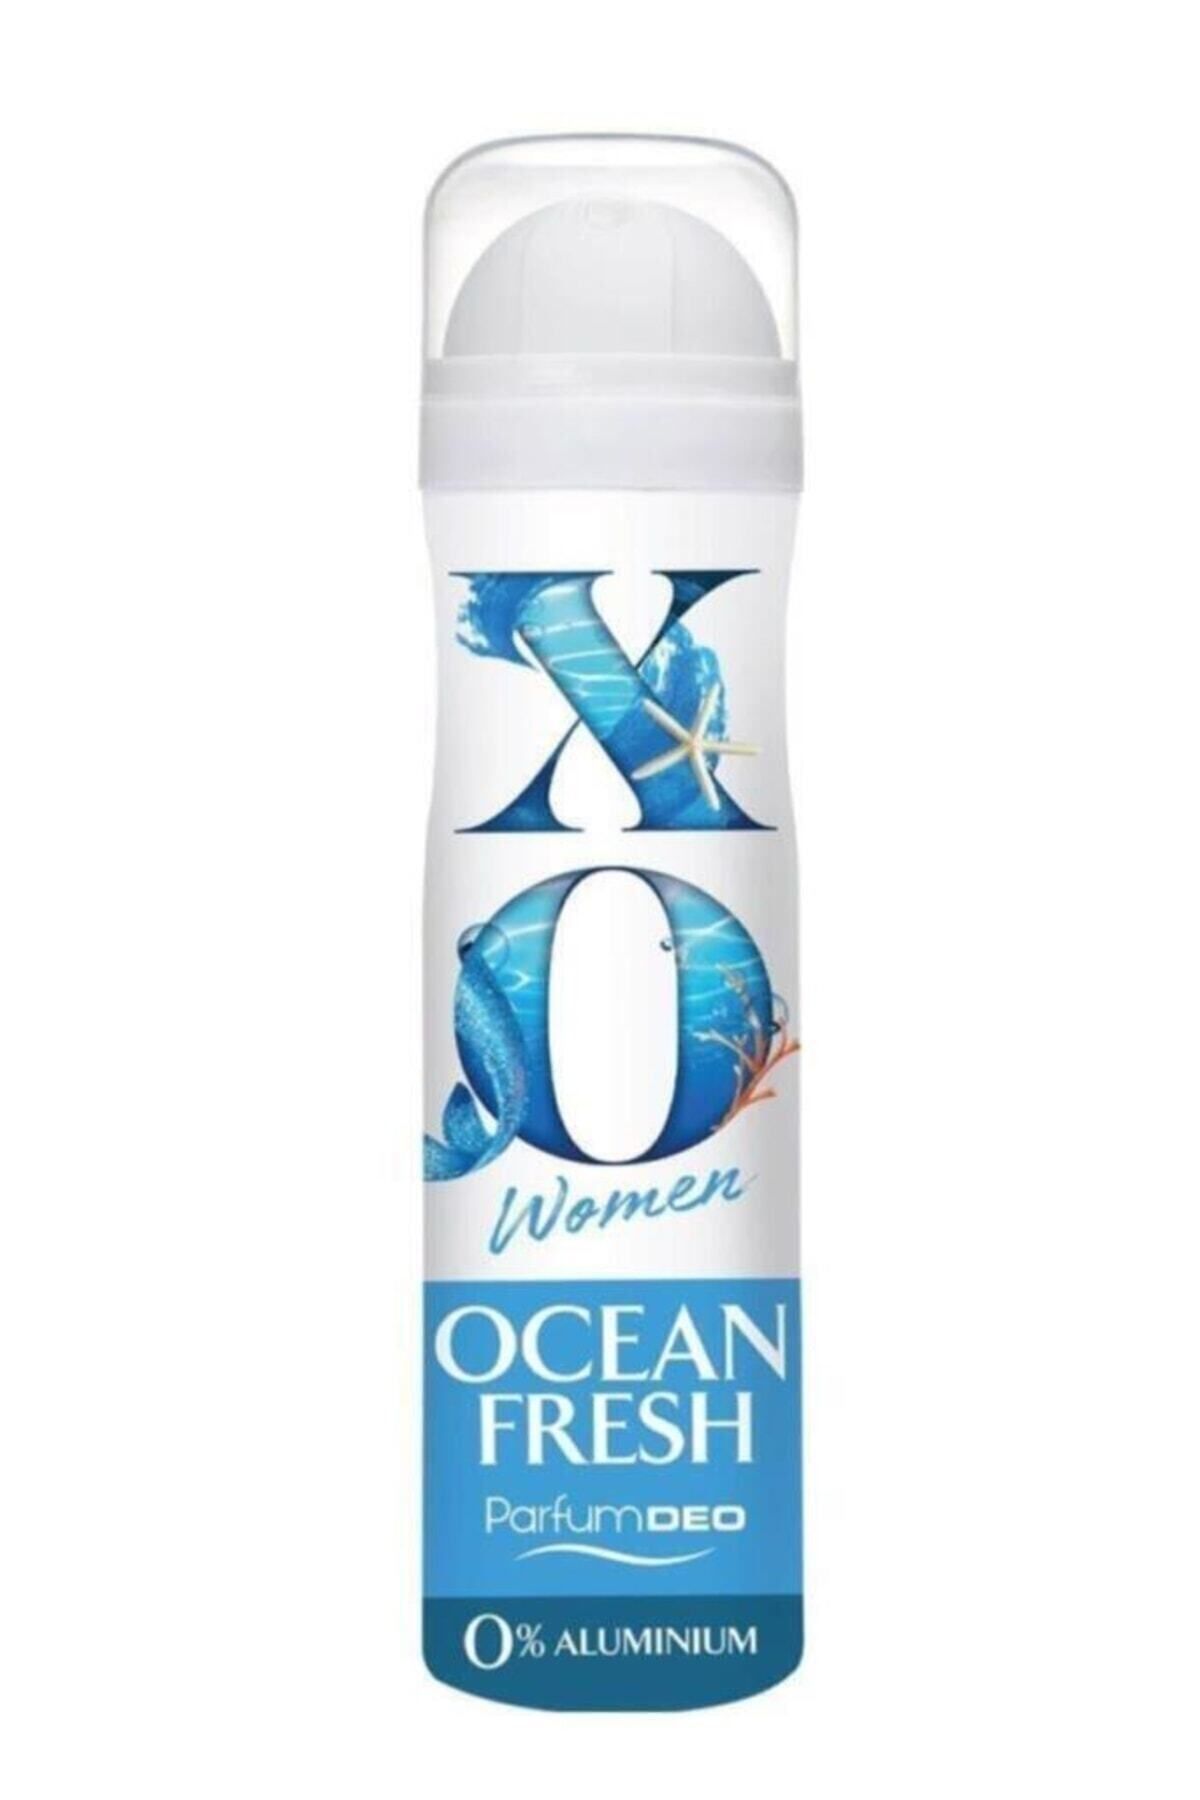 Xo Deodorant Kadın Ocean Fresh 150ml